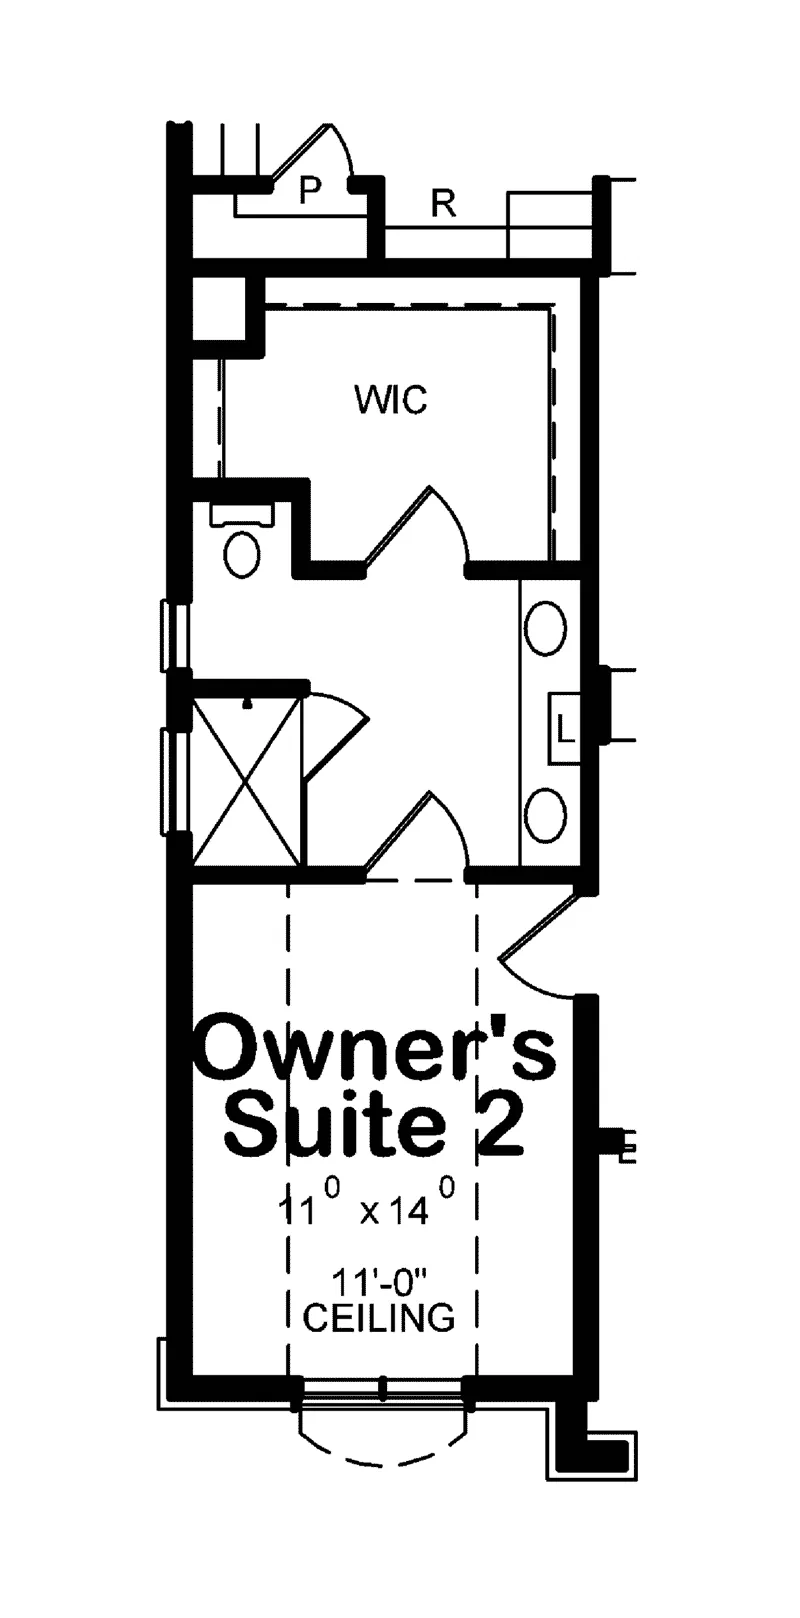 Multi-Family House Plan Optional Floor Plan - Colony Park Multi-Family Home 026D-1964 - Shop House Plans and More